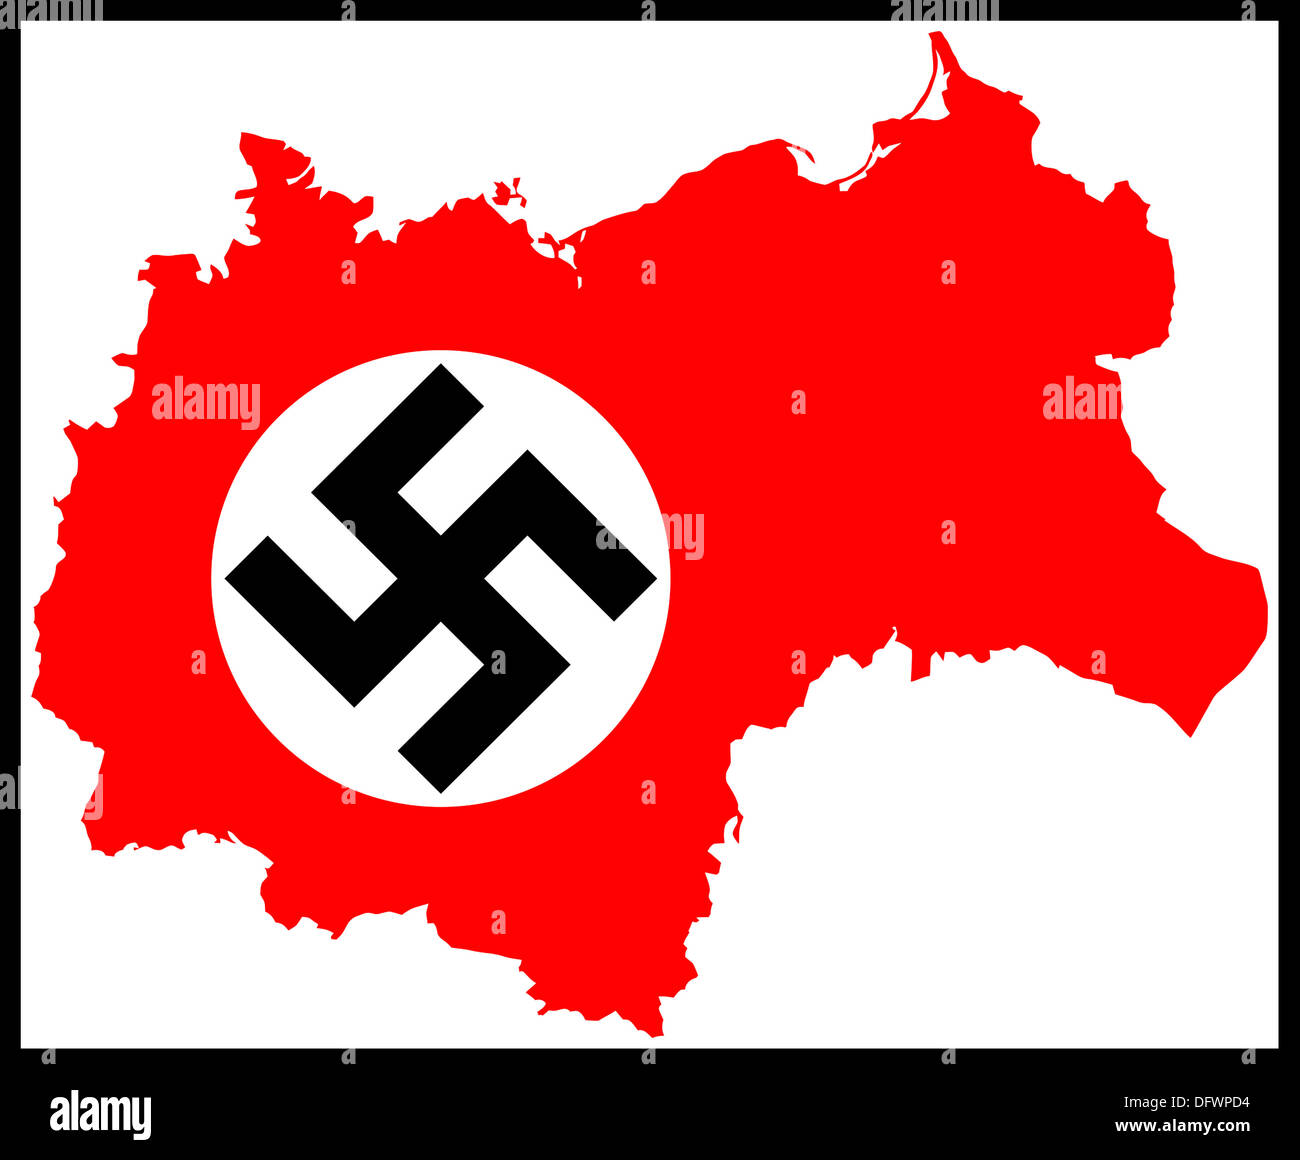 Deutsche Nazi-Hakenkreuz-Flagge auf roter Umrisskarte der besetzten Länder während des 2. Weltkriegs von 1939 bis 1945. Deutsche Besatzung. Stockfoto